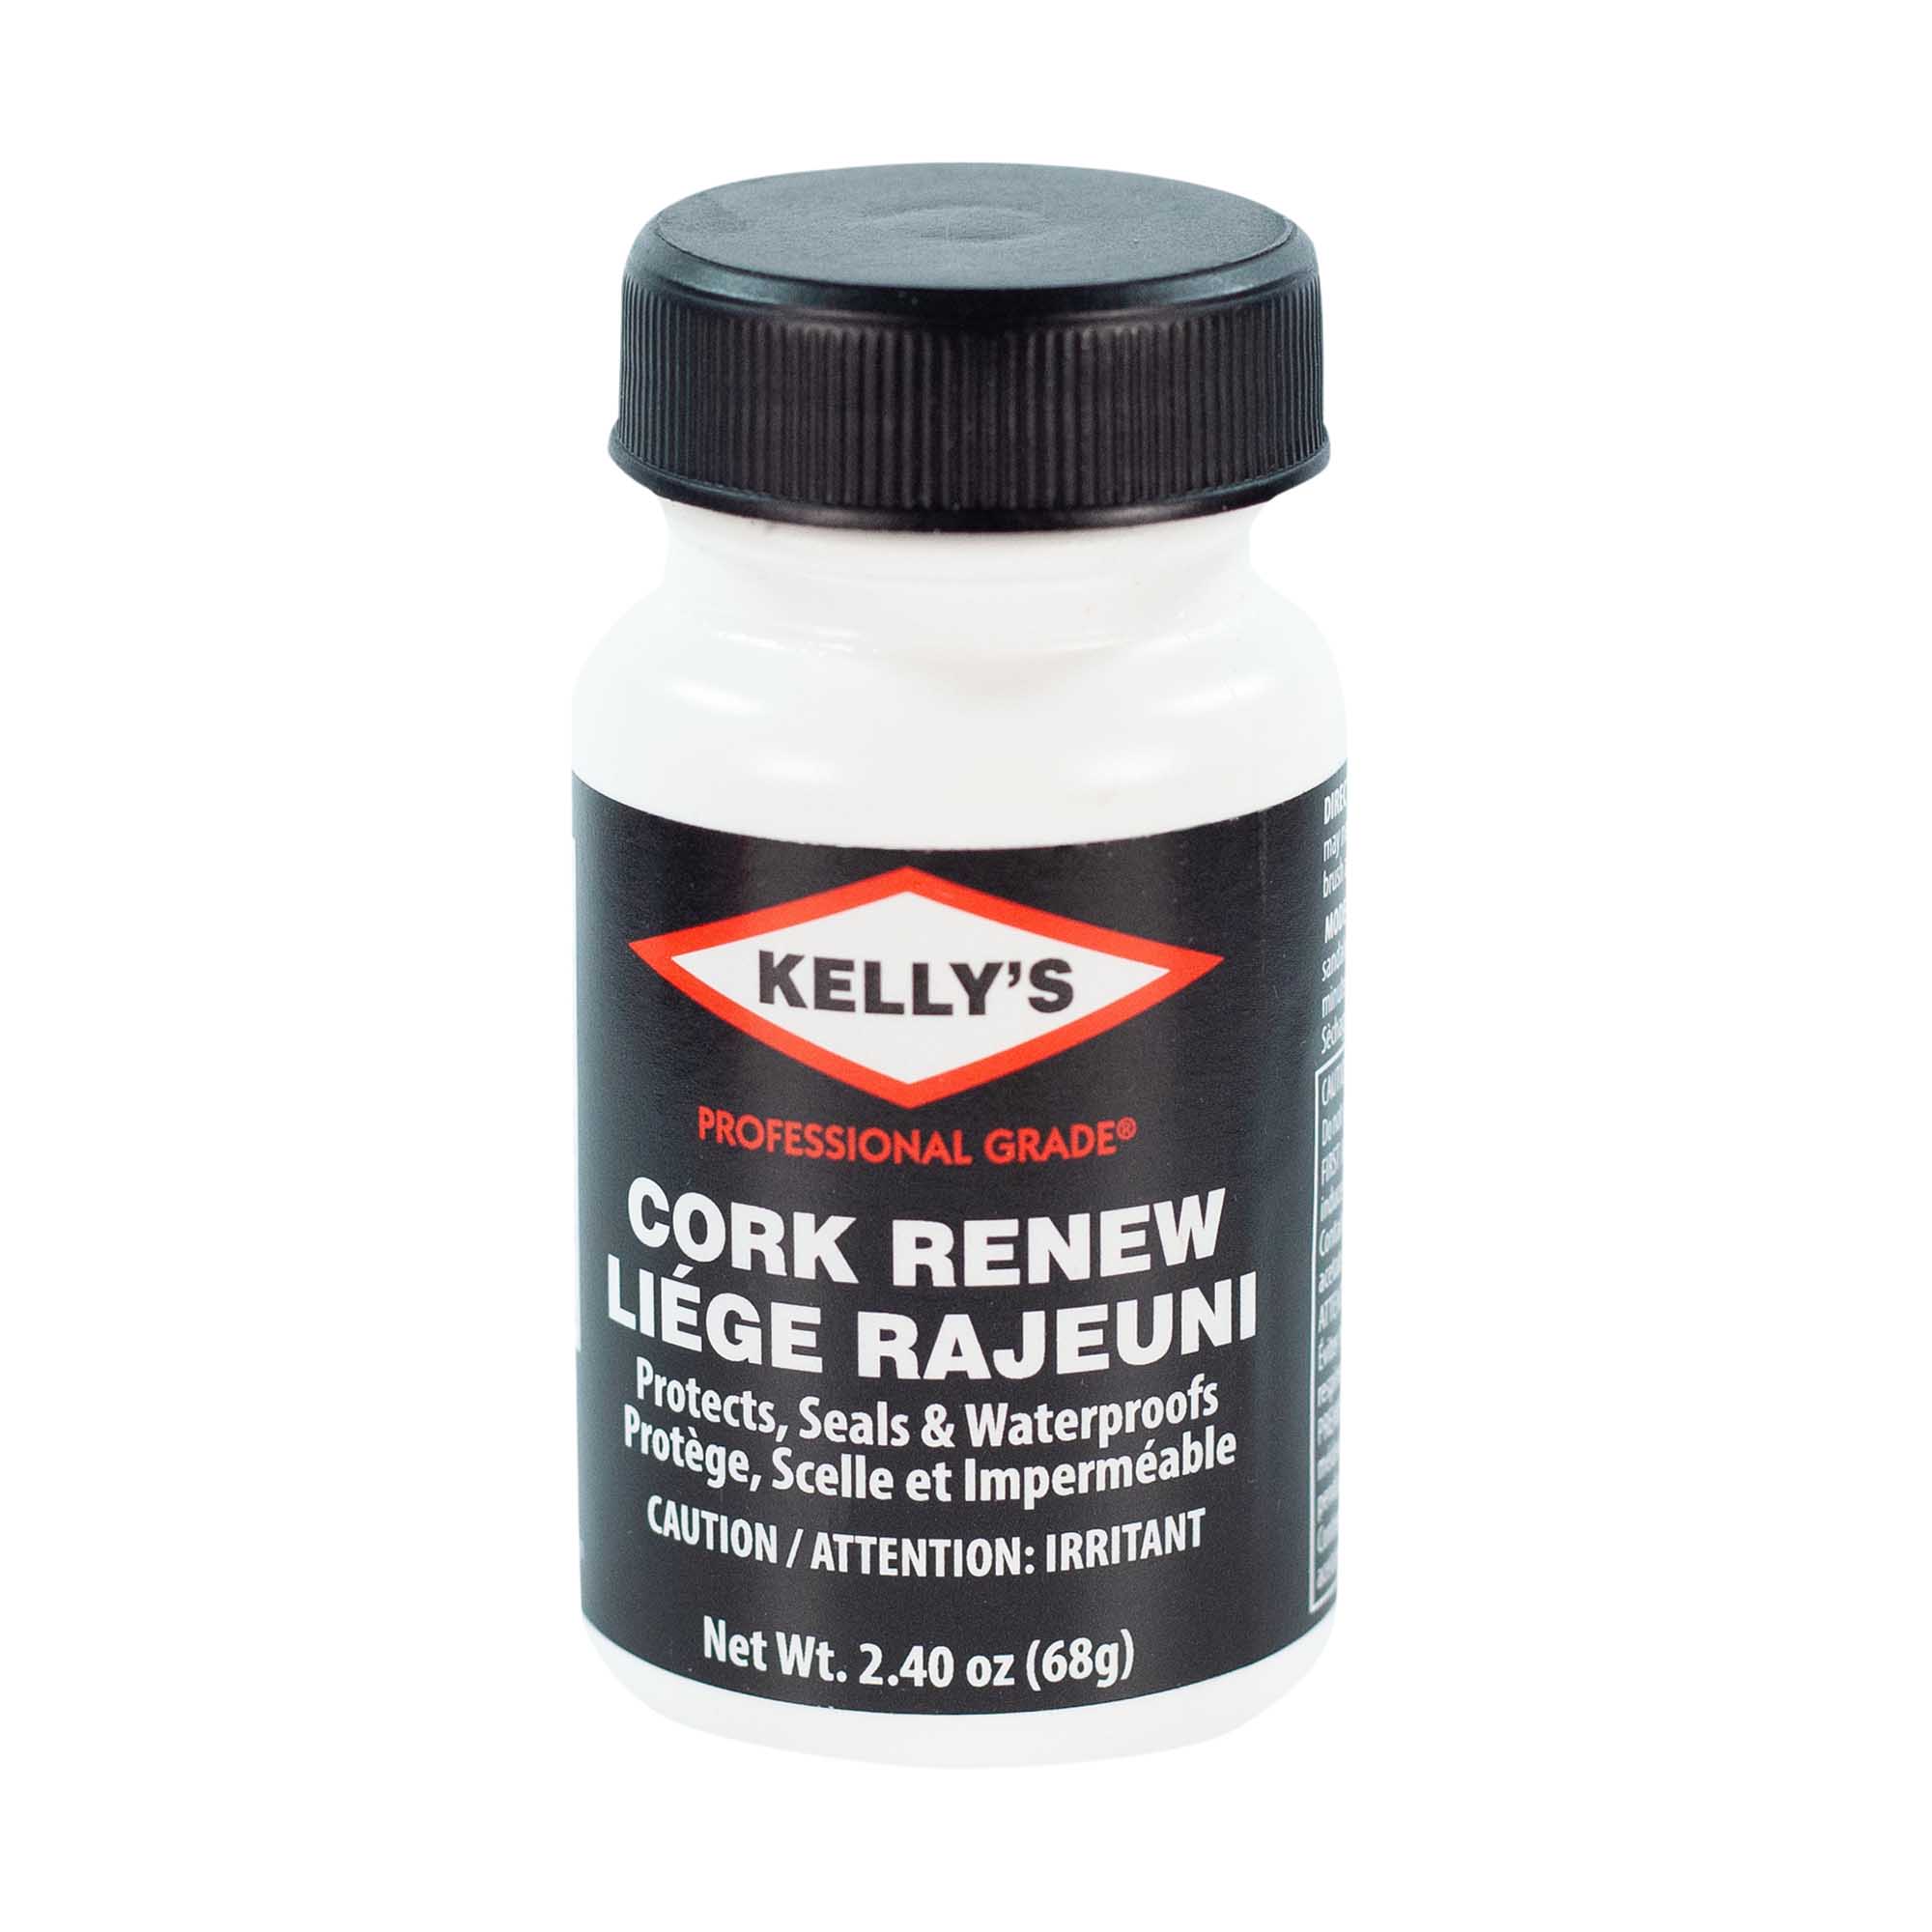 Kelly's Cork Renew – Fiebing's